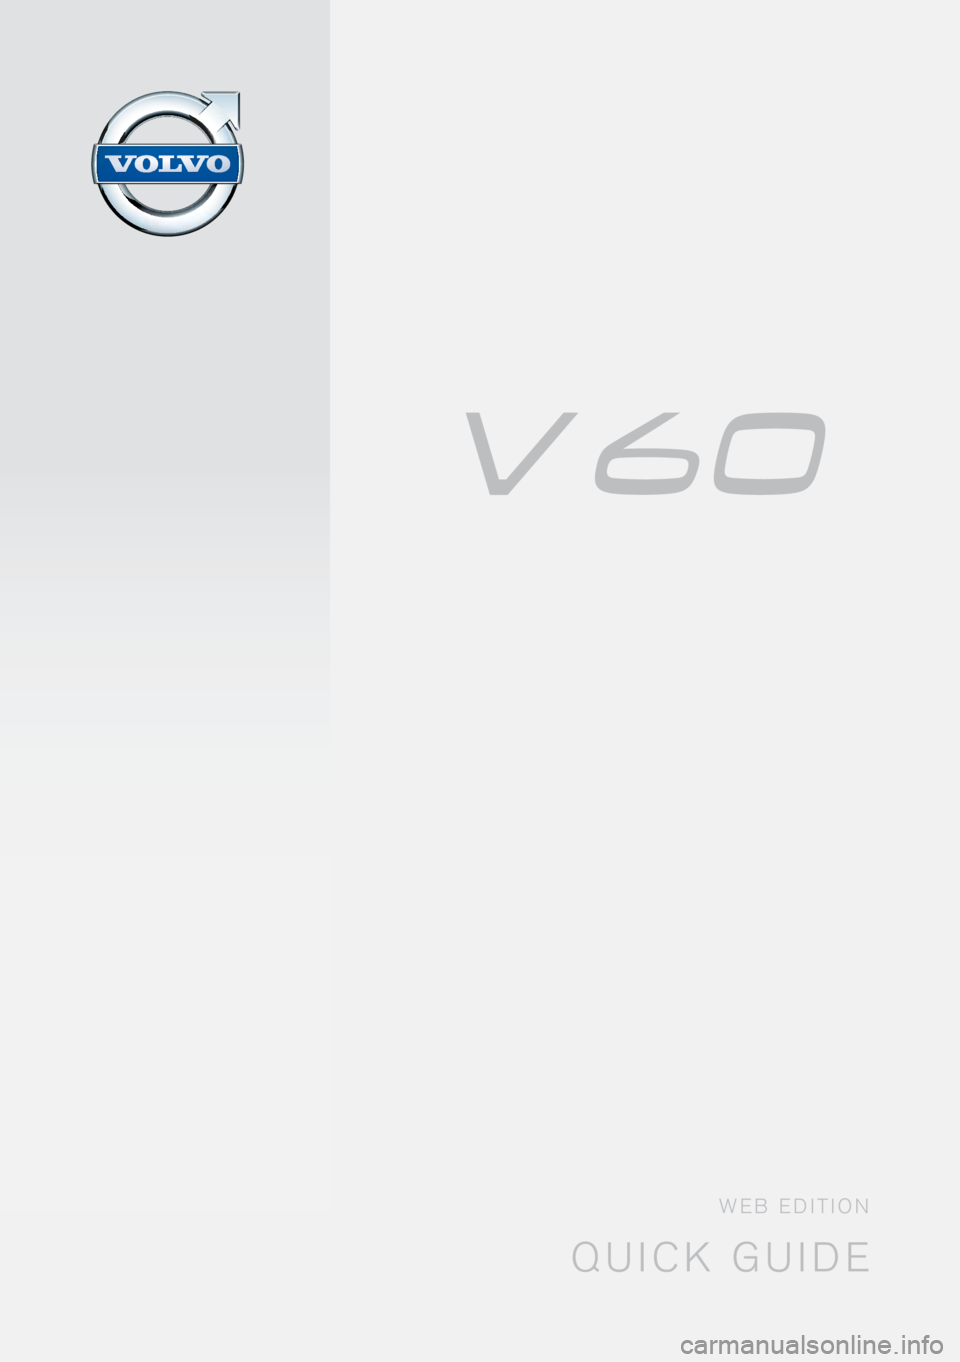 VOLVO V60 2015  Quick Guide quick guide
web edition 